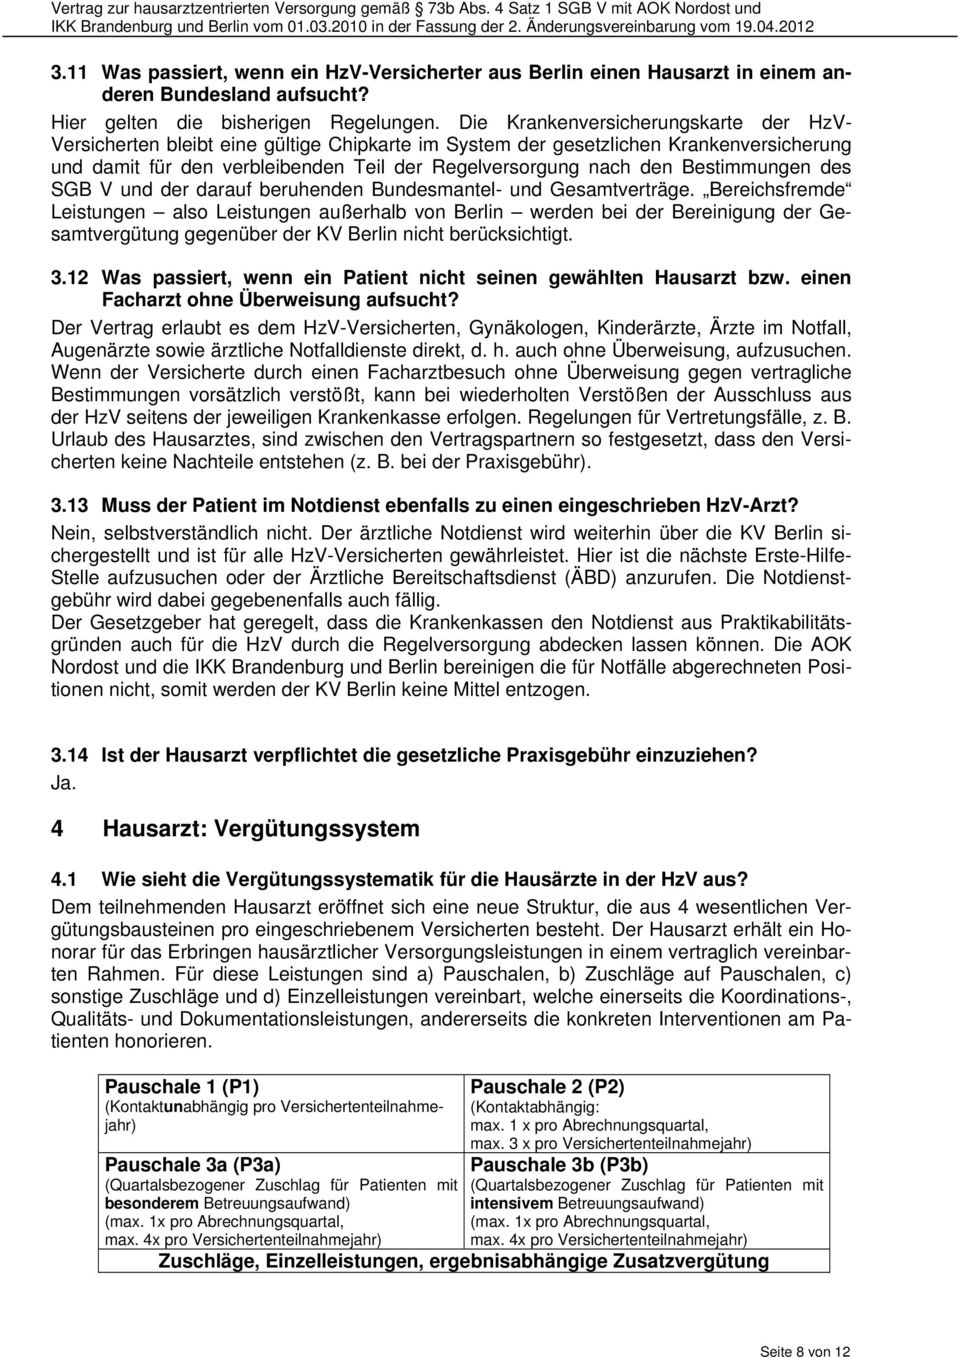 Bestimmungen des SGB V und der darauf beruhenden Bundesmantel- und Gesamtverträge.